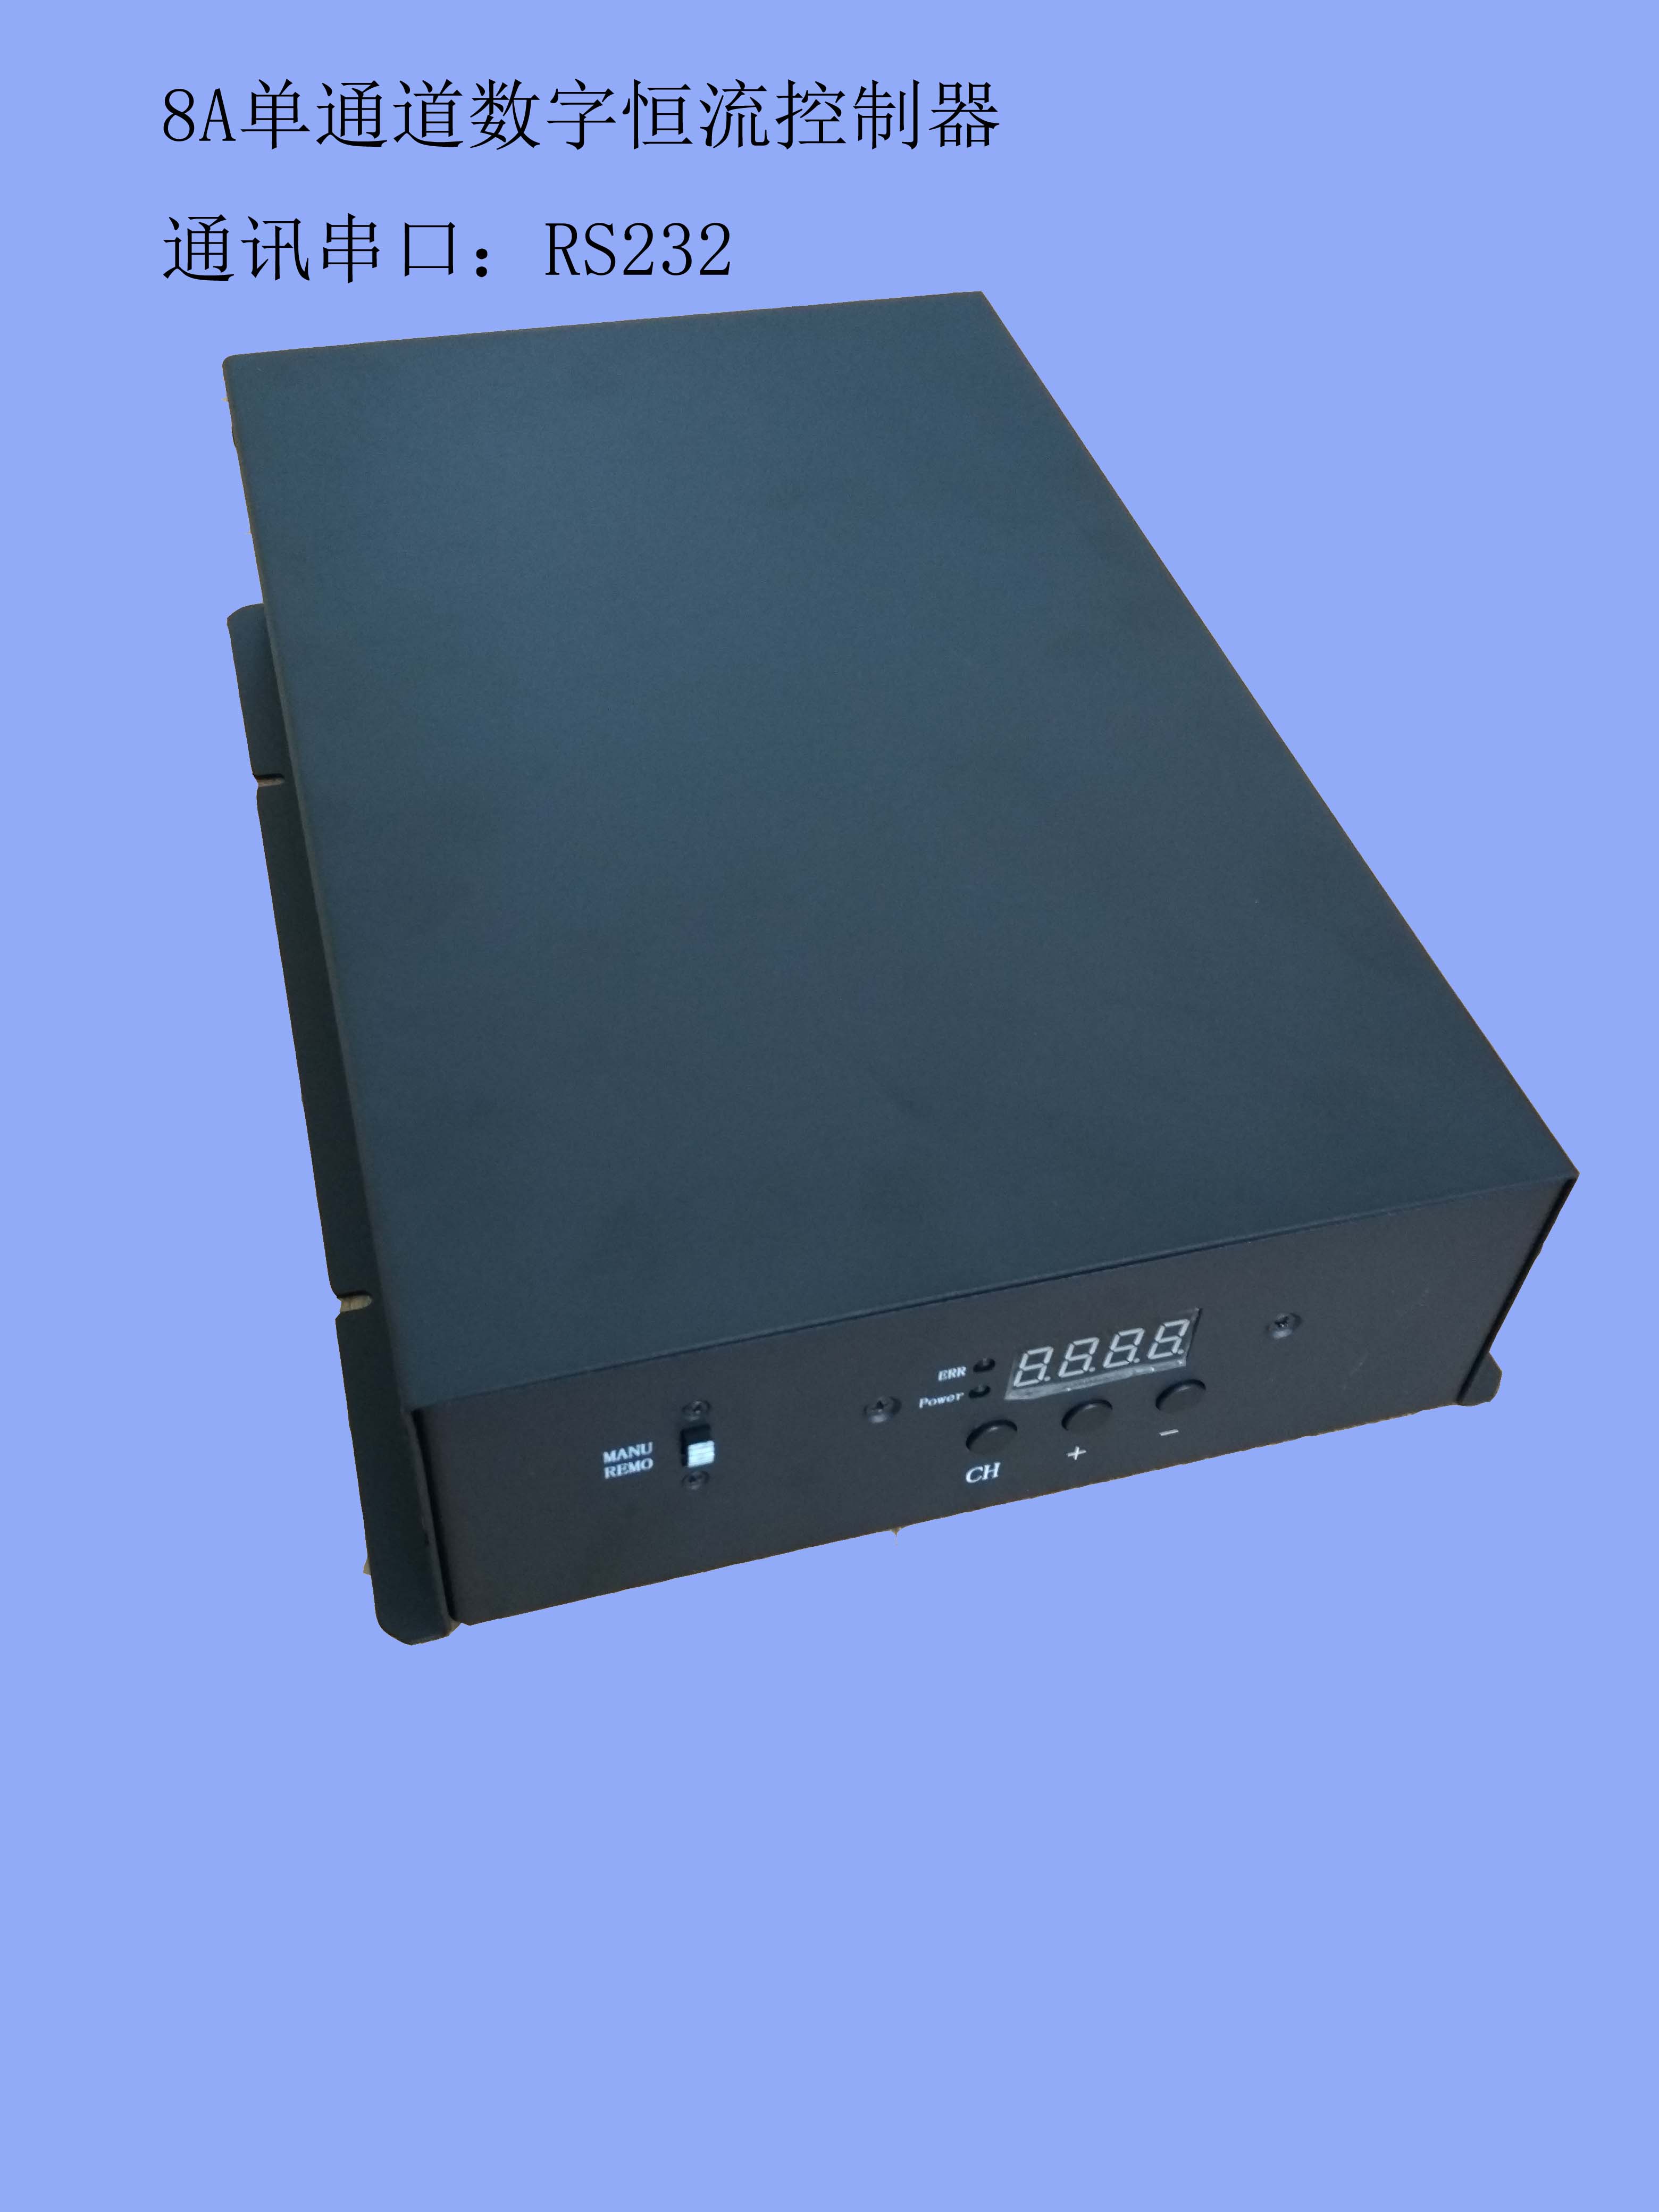 大功率数字恒流控制器HDCPL-24W300-T1